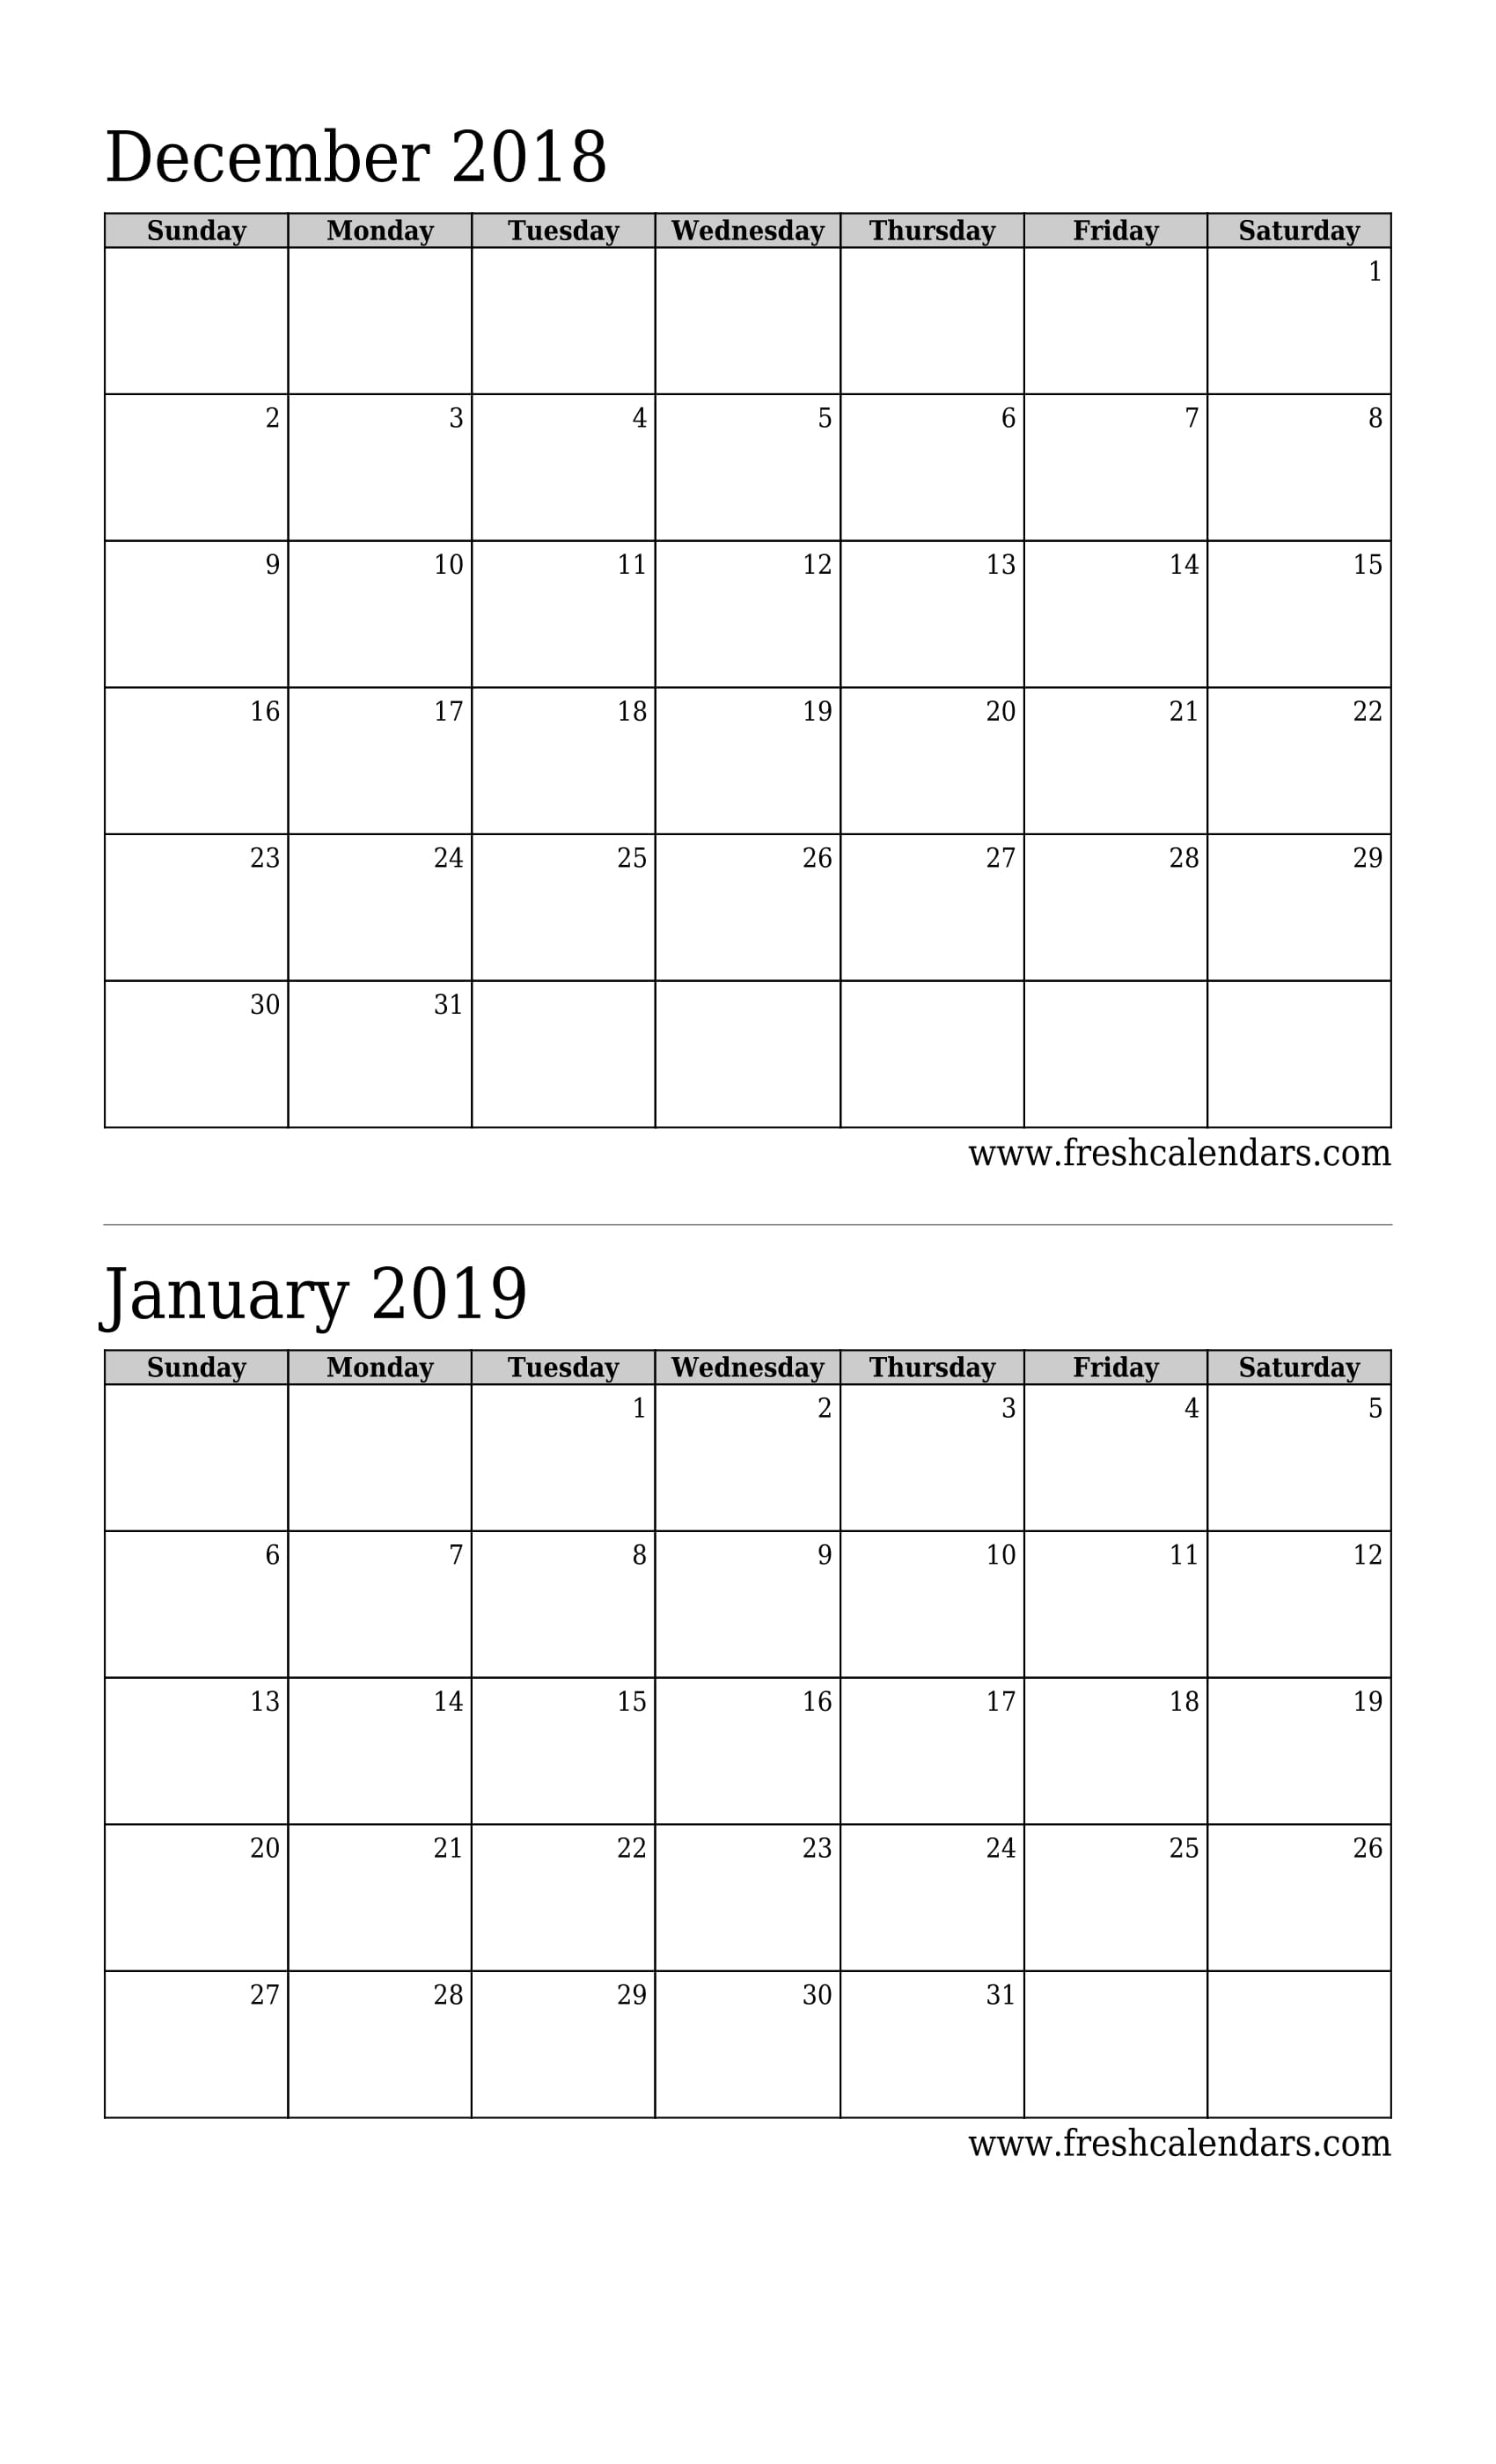 December 2018 Calendar 2 Months Calendar (Basic)